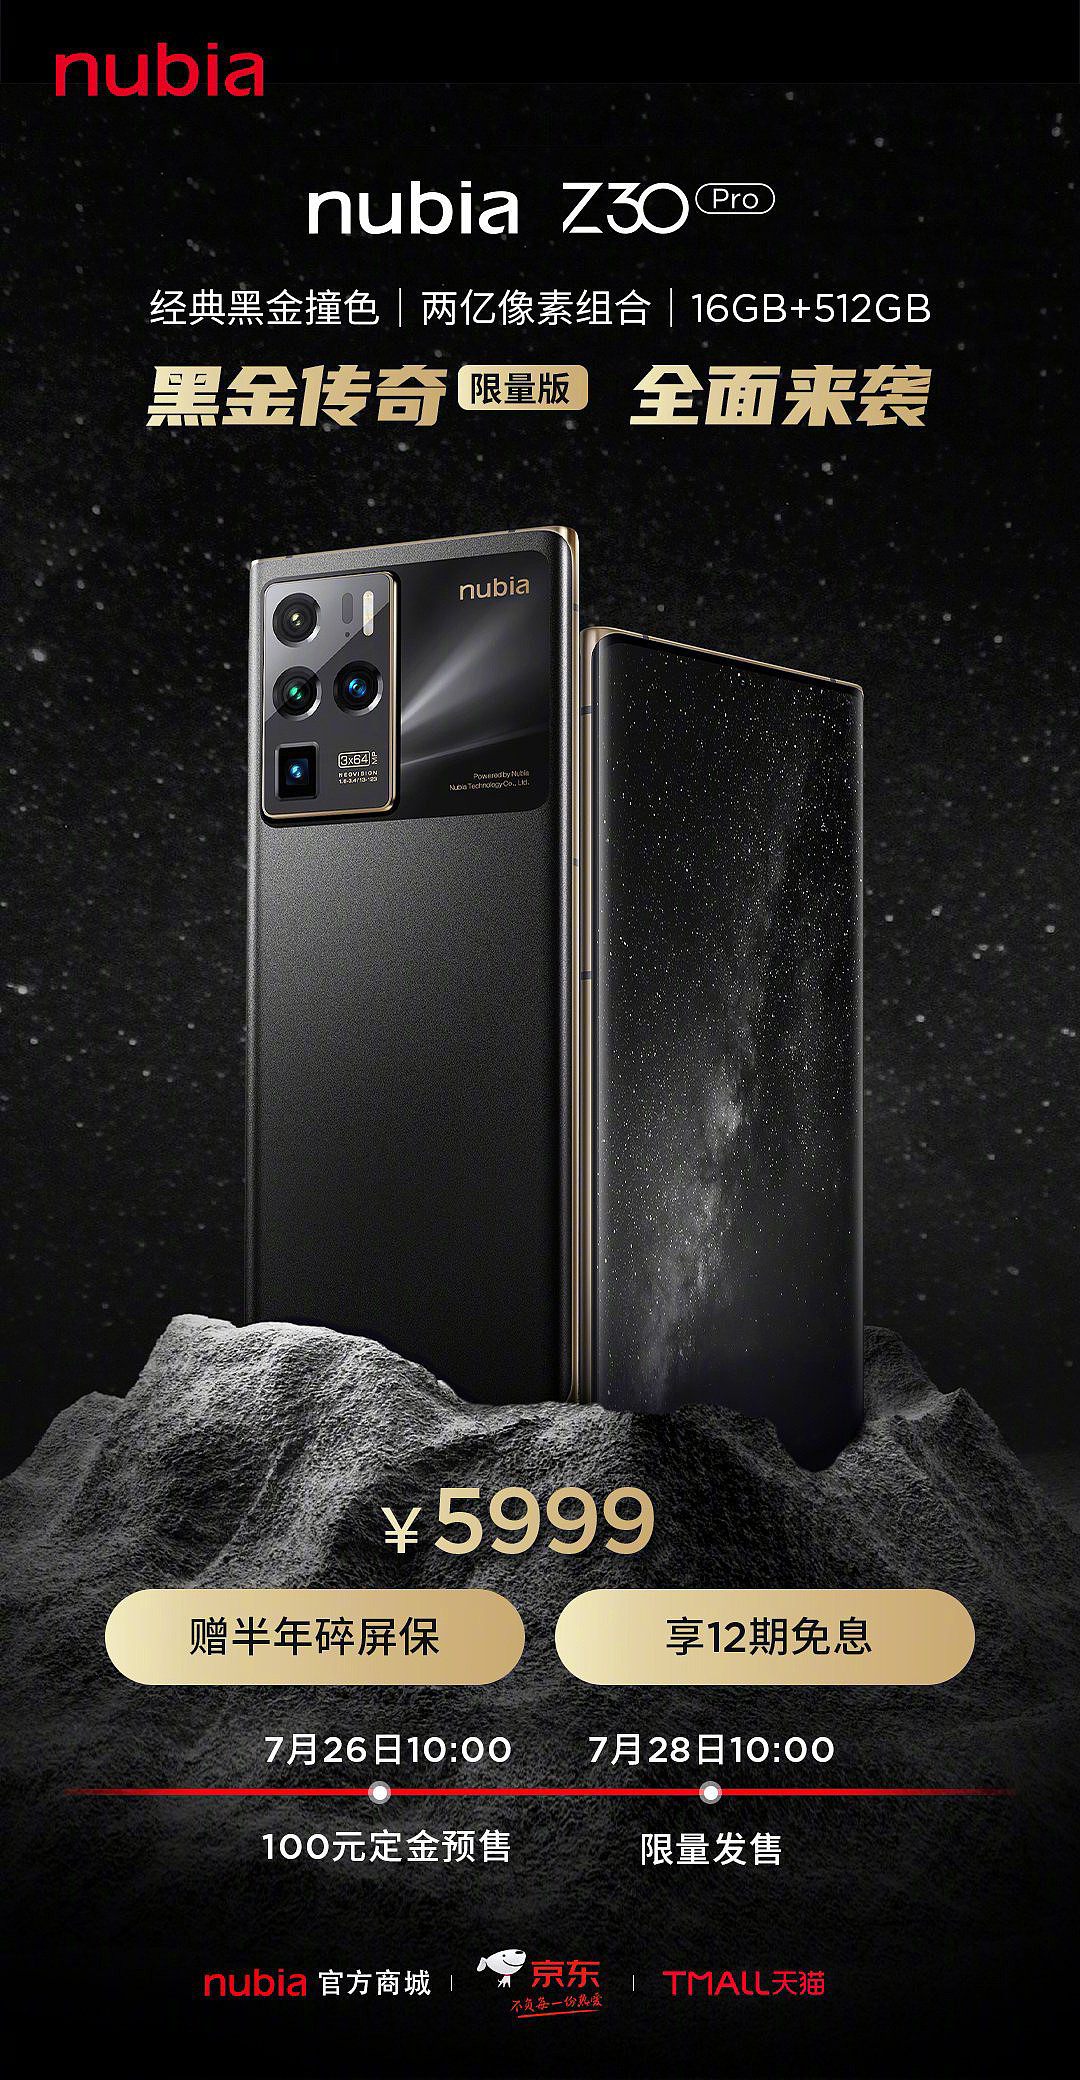 努比亚 Z30 Pro 黑金传奇限量版今日开售：两亿像素组合 + 天文影像系统，5999 元 - 1